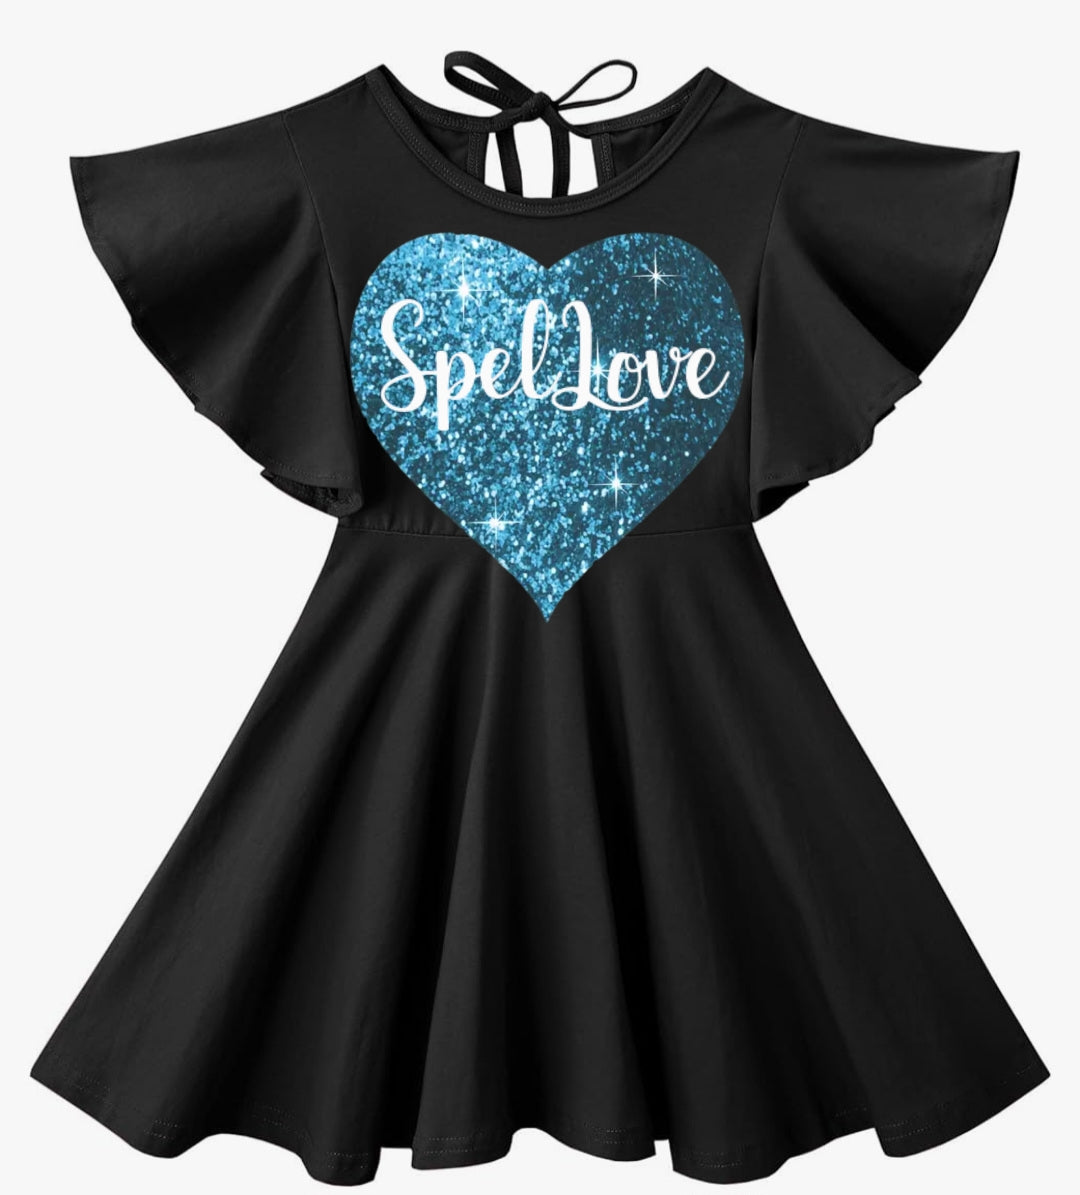 Girls SpelLove Dress Spelman Kids